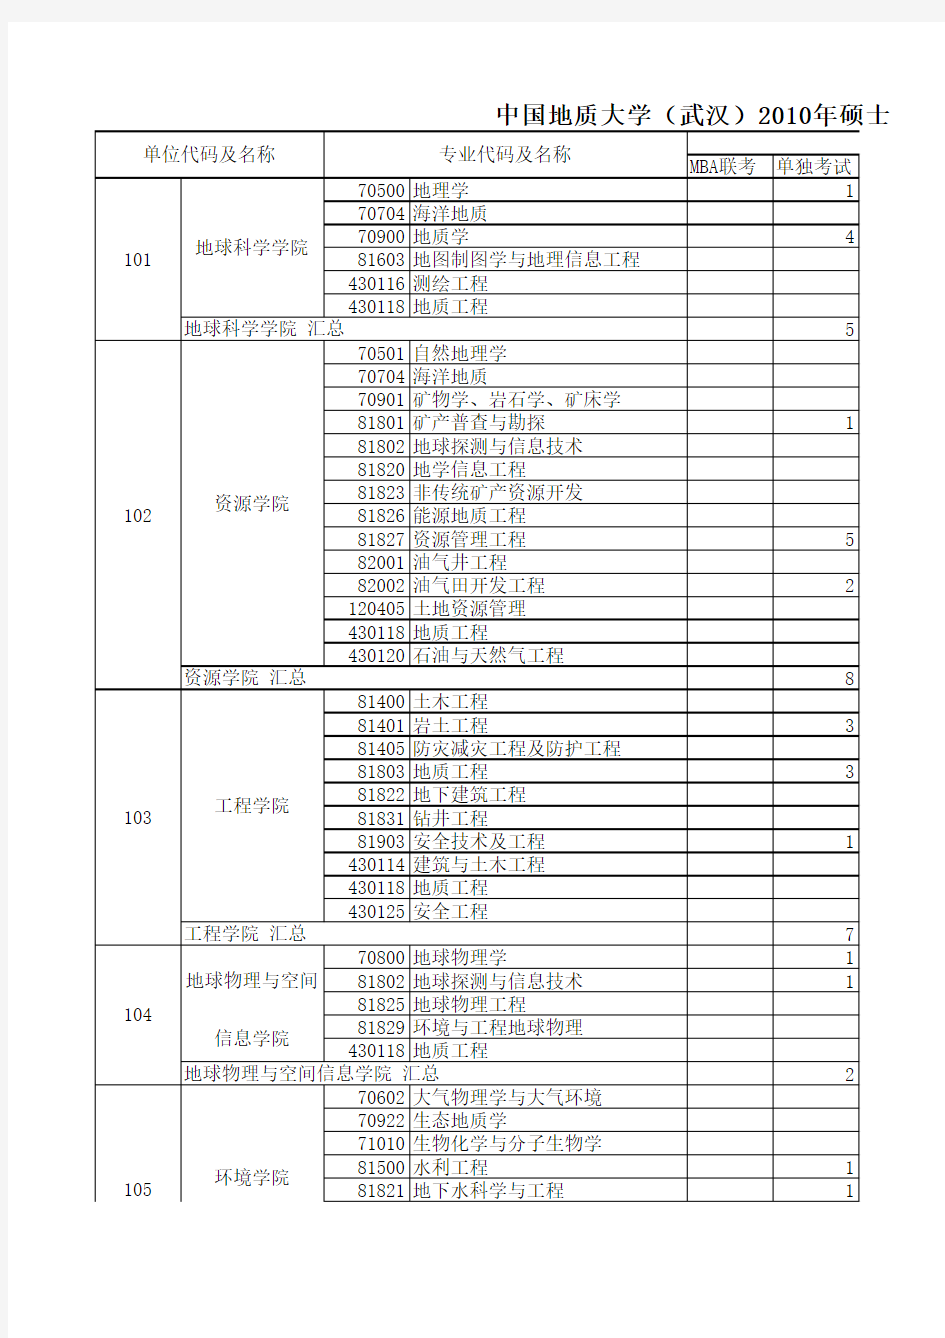 中国地质大学(武汉)2010年硕士生报考录取情况统计表